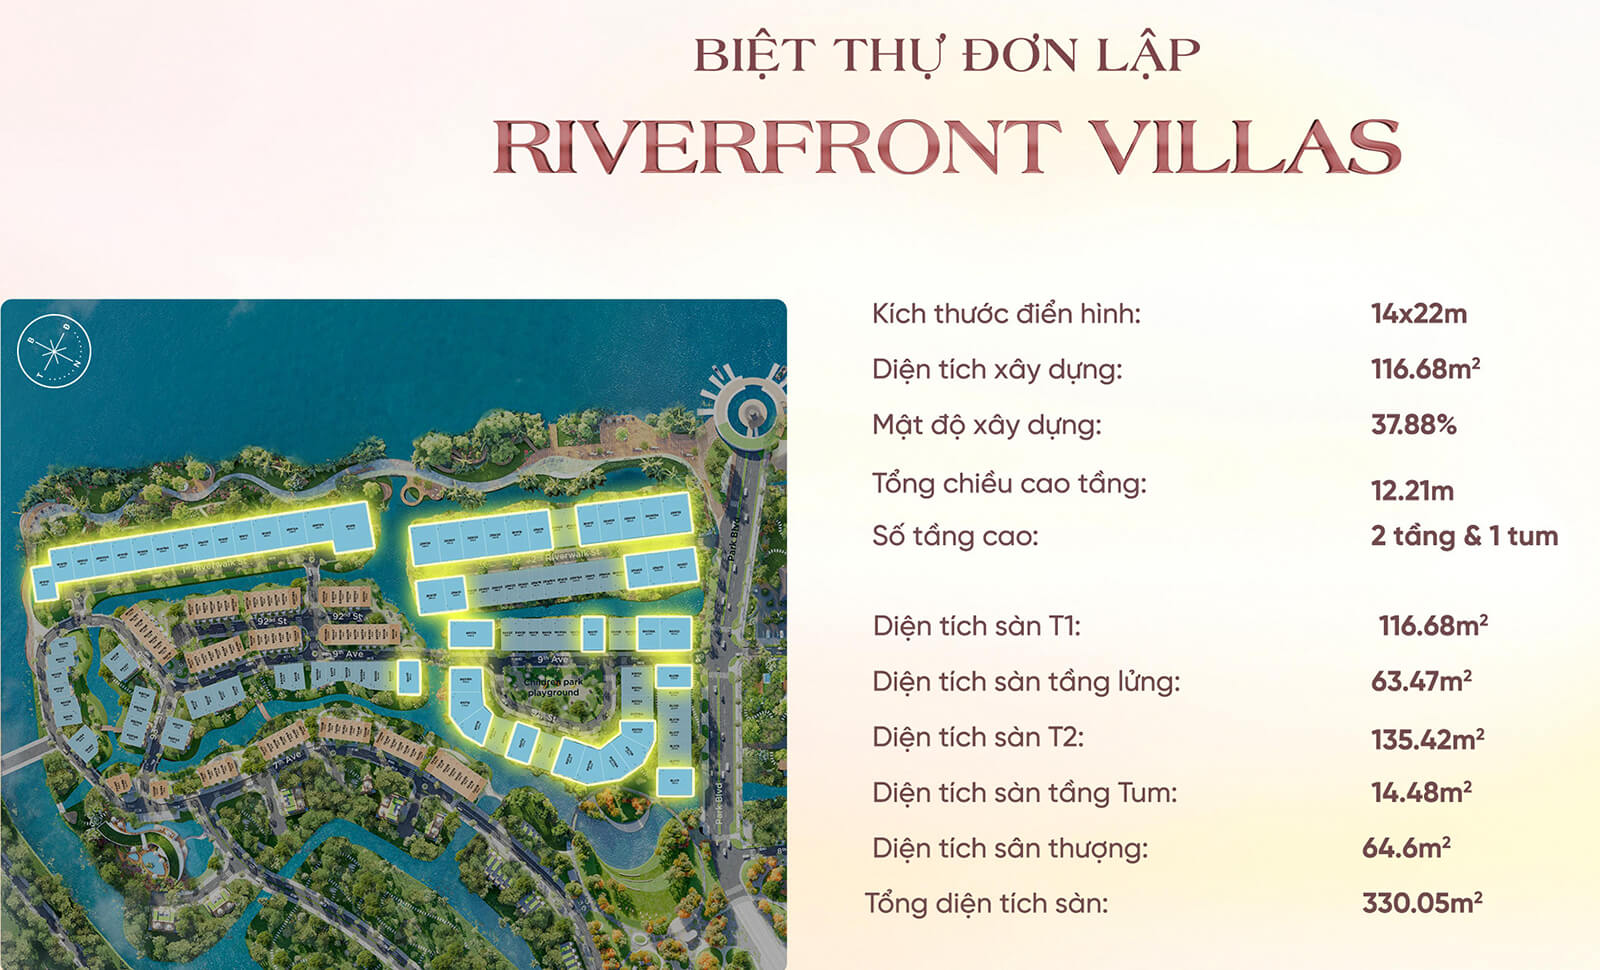 Biệt thự đơn lập Riverfront Villas tại Ecovillage Saigon River 